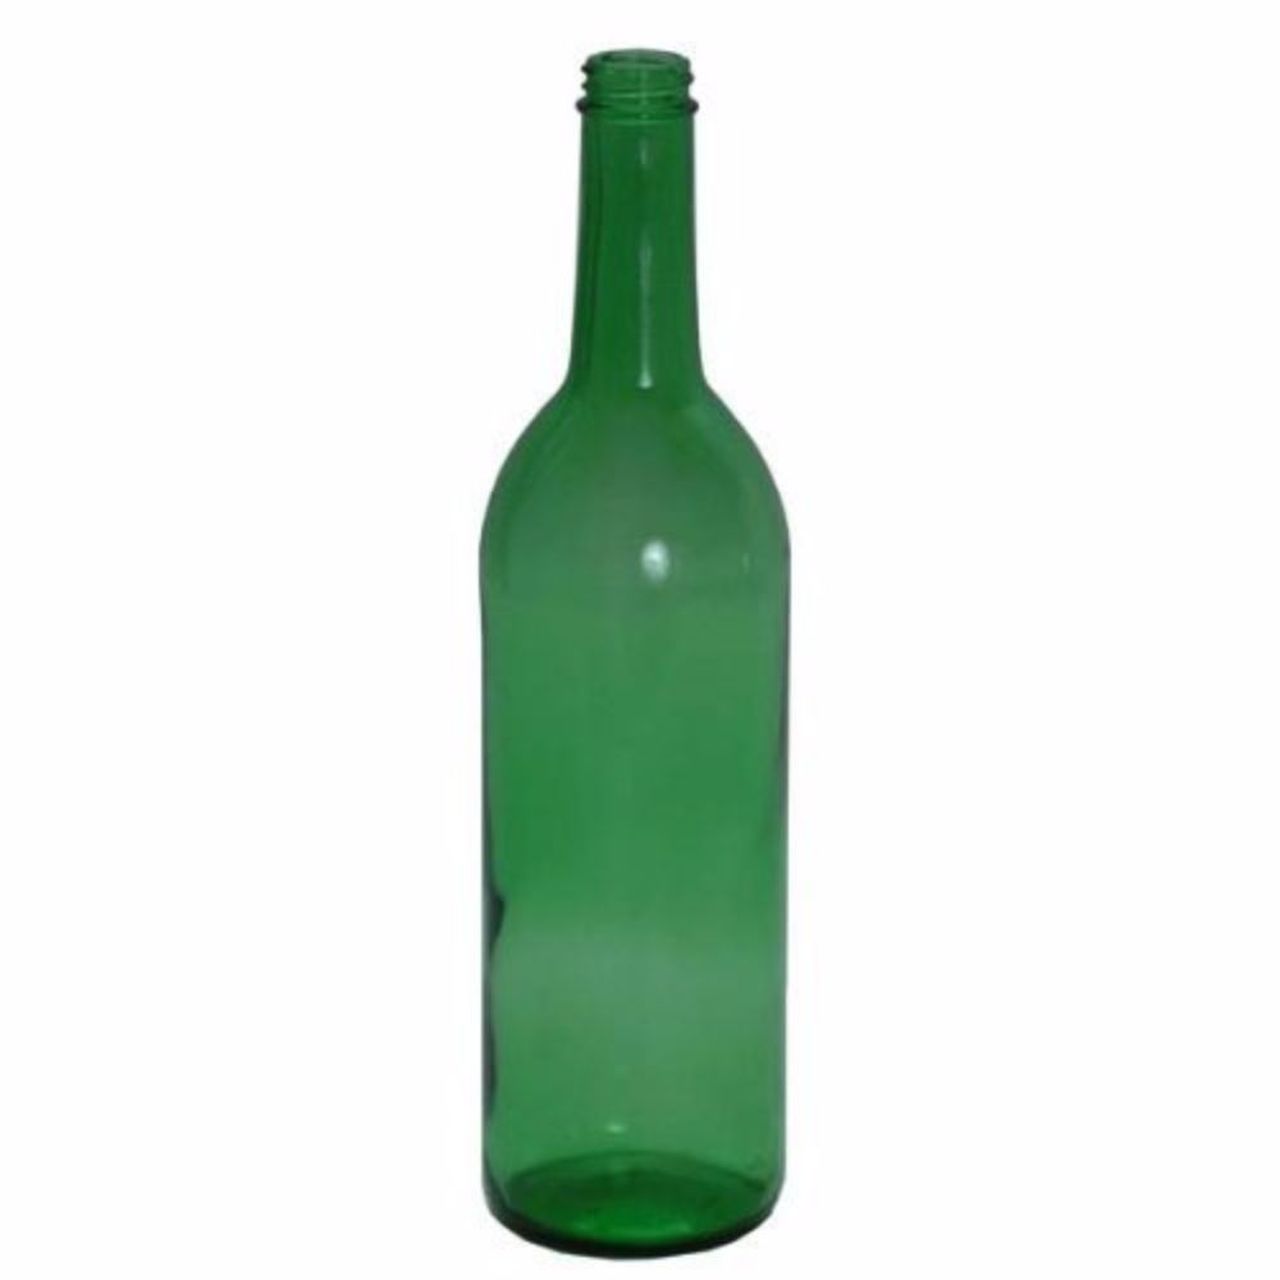 Bordeaux Wine Bottles - 750 ml, Screw Top, Green - Case of 12